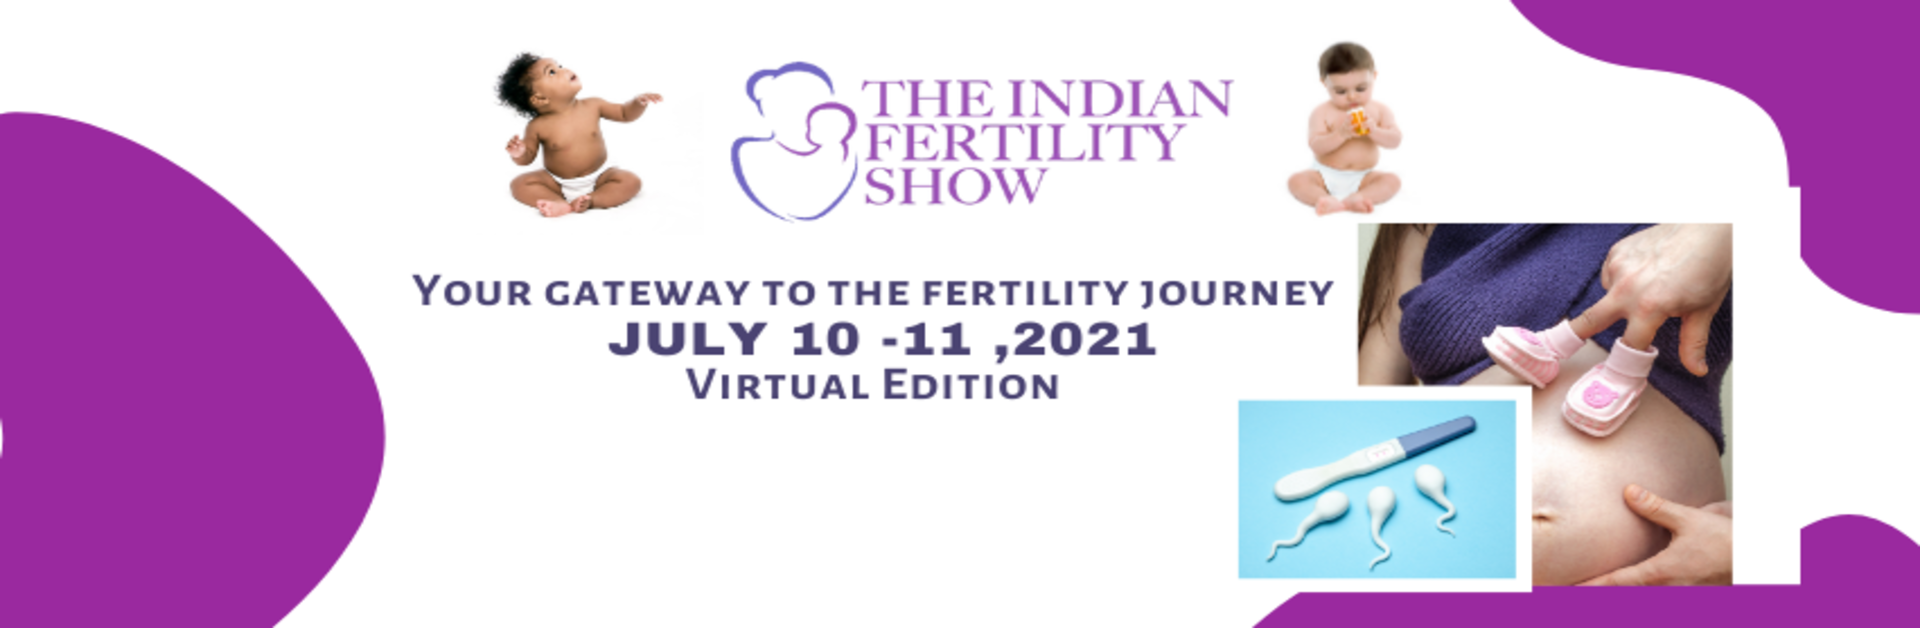 The Indian Fertility Show, New Delhi, Delhi, India